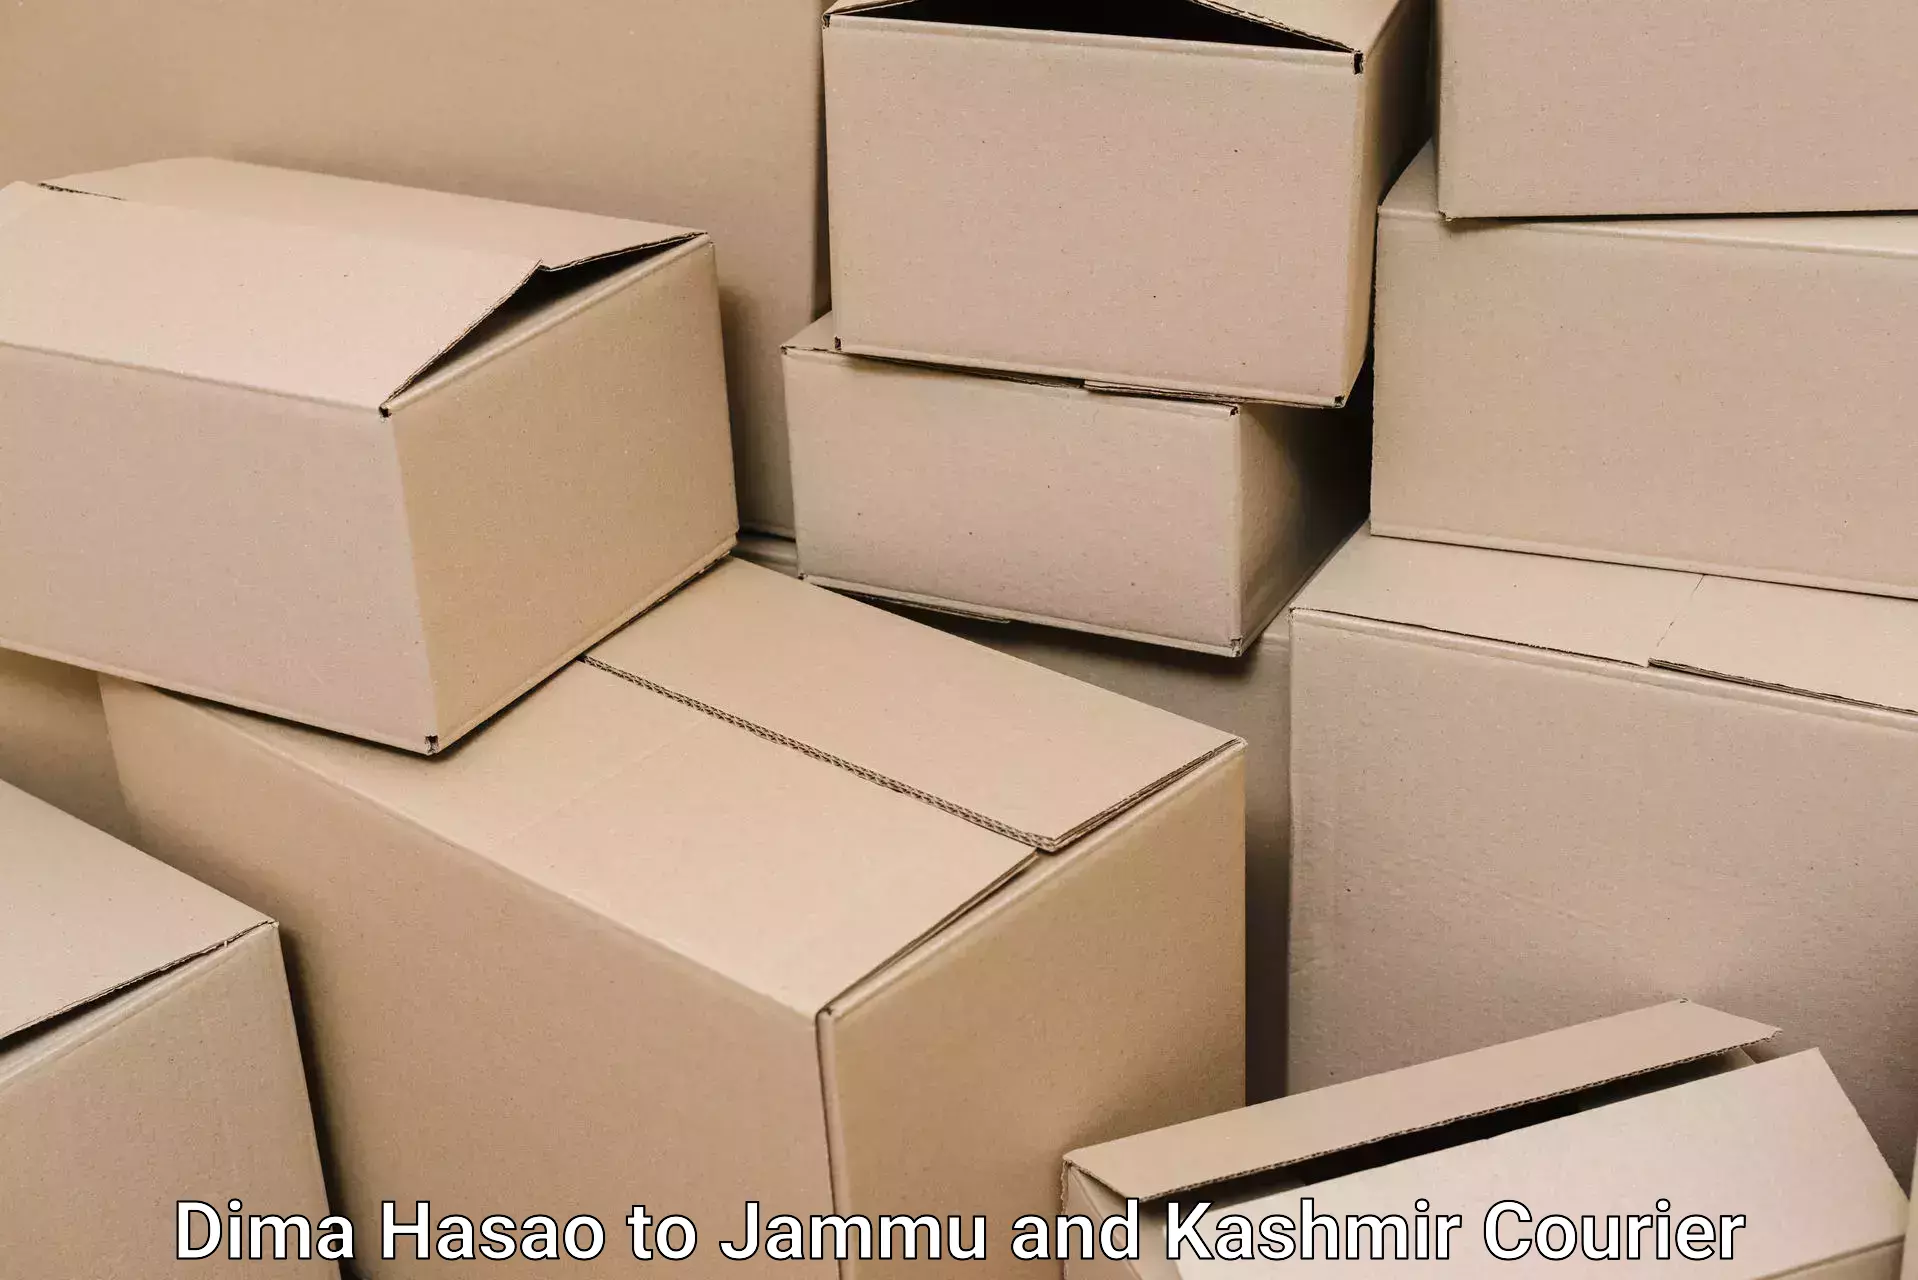 Furniture delivery service Dima Hasao to Hiranagar